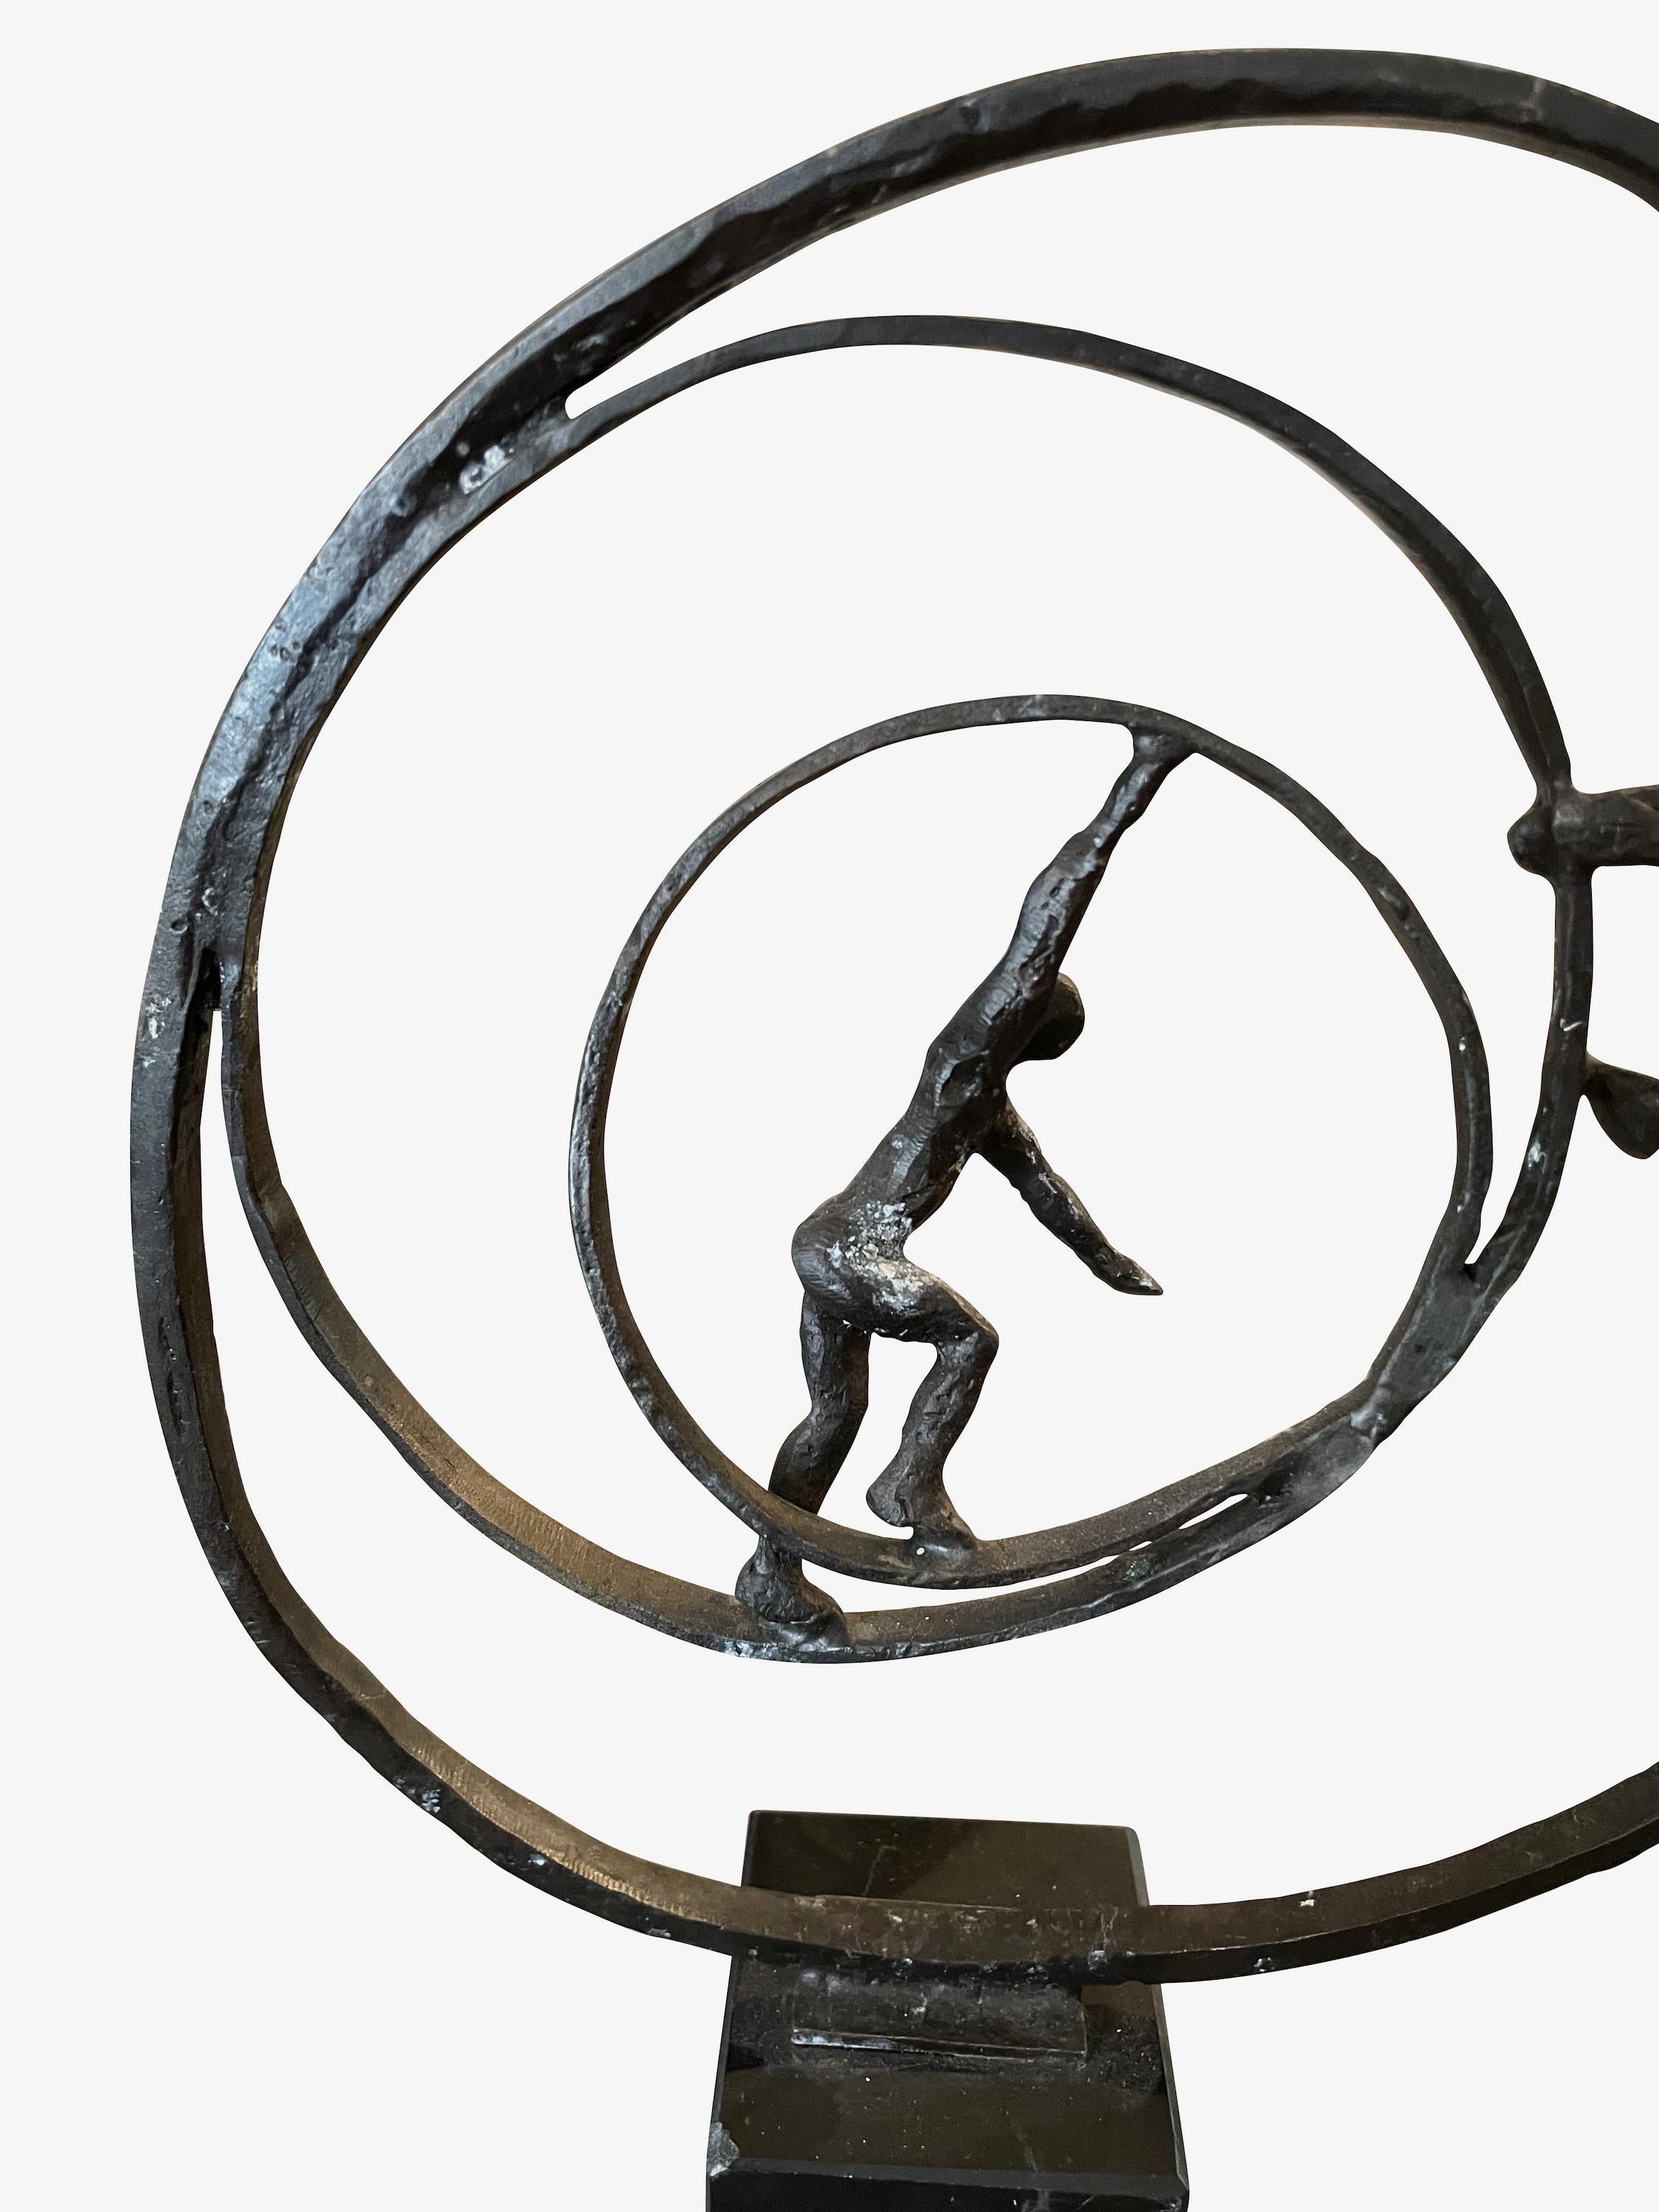 Zeitgenössische belgische Ringe aus gehämmertem Eisen mit zwei männlichen Figuren.
Schieben und Ziehen in Bewegung.
Drei konzentrische Kreise.
Montiert in Marmor Würfel misst 2,5 